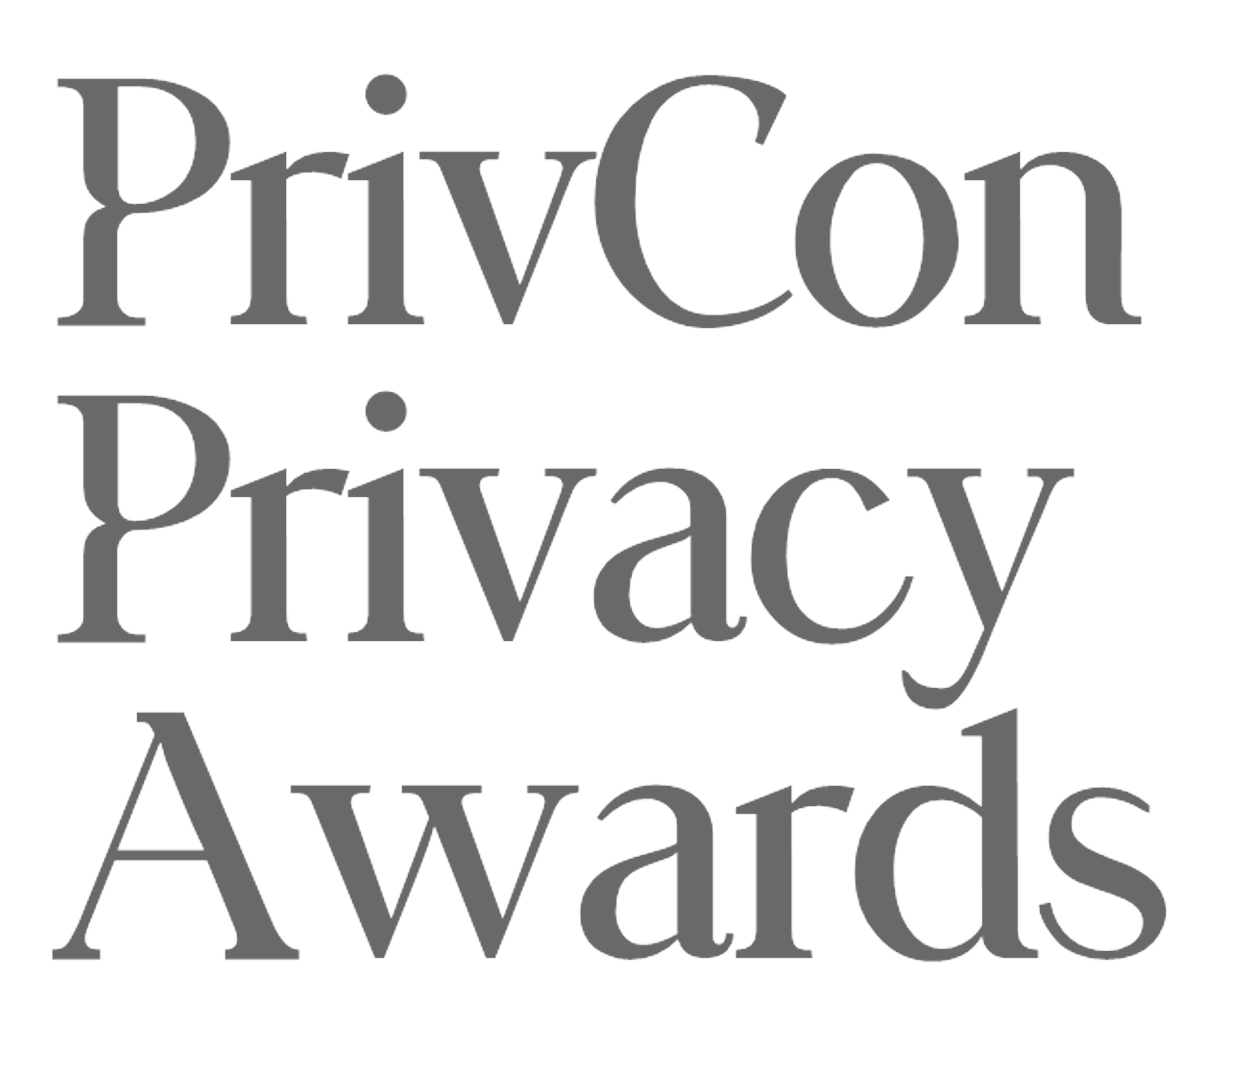 PrivCon Privacy Awards